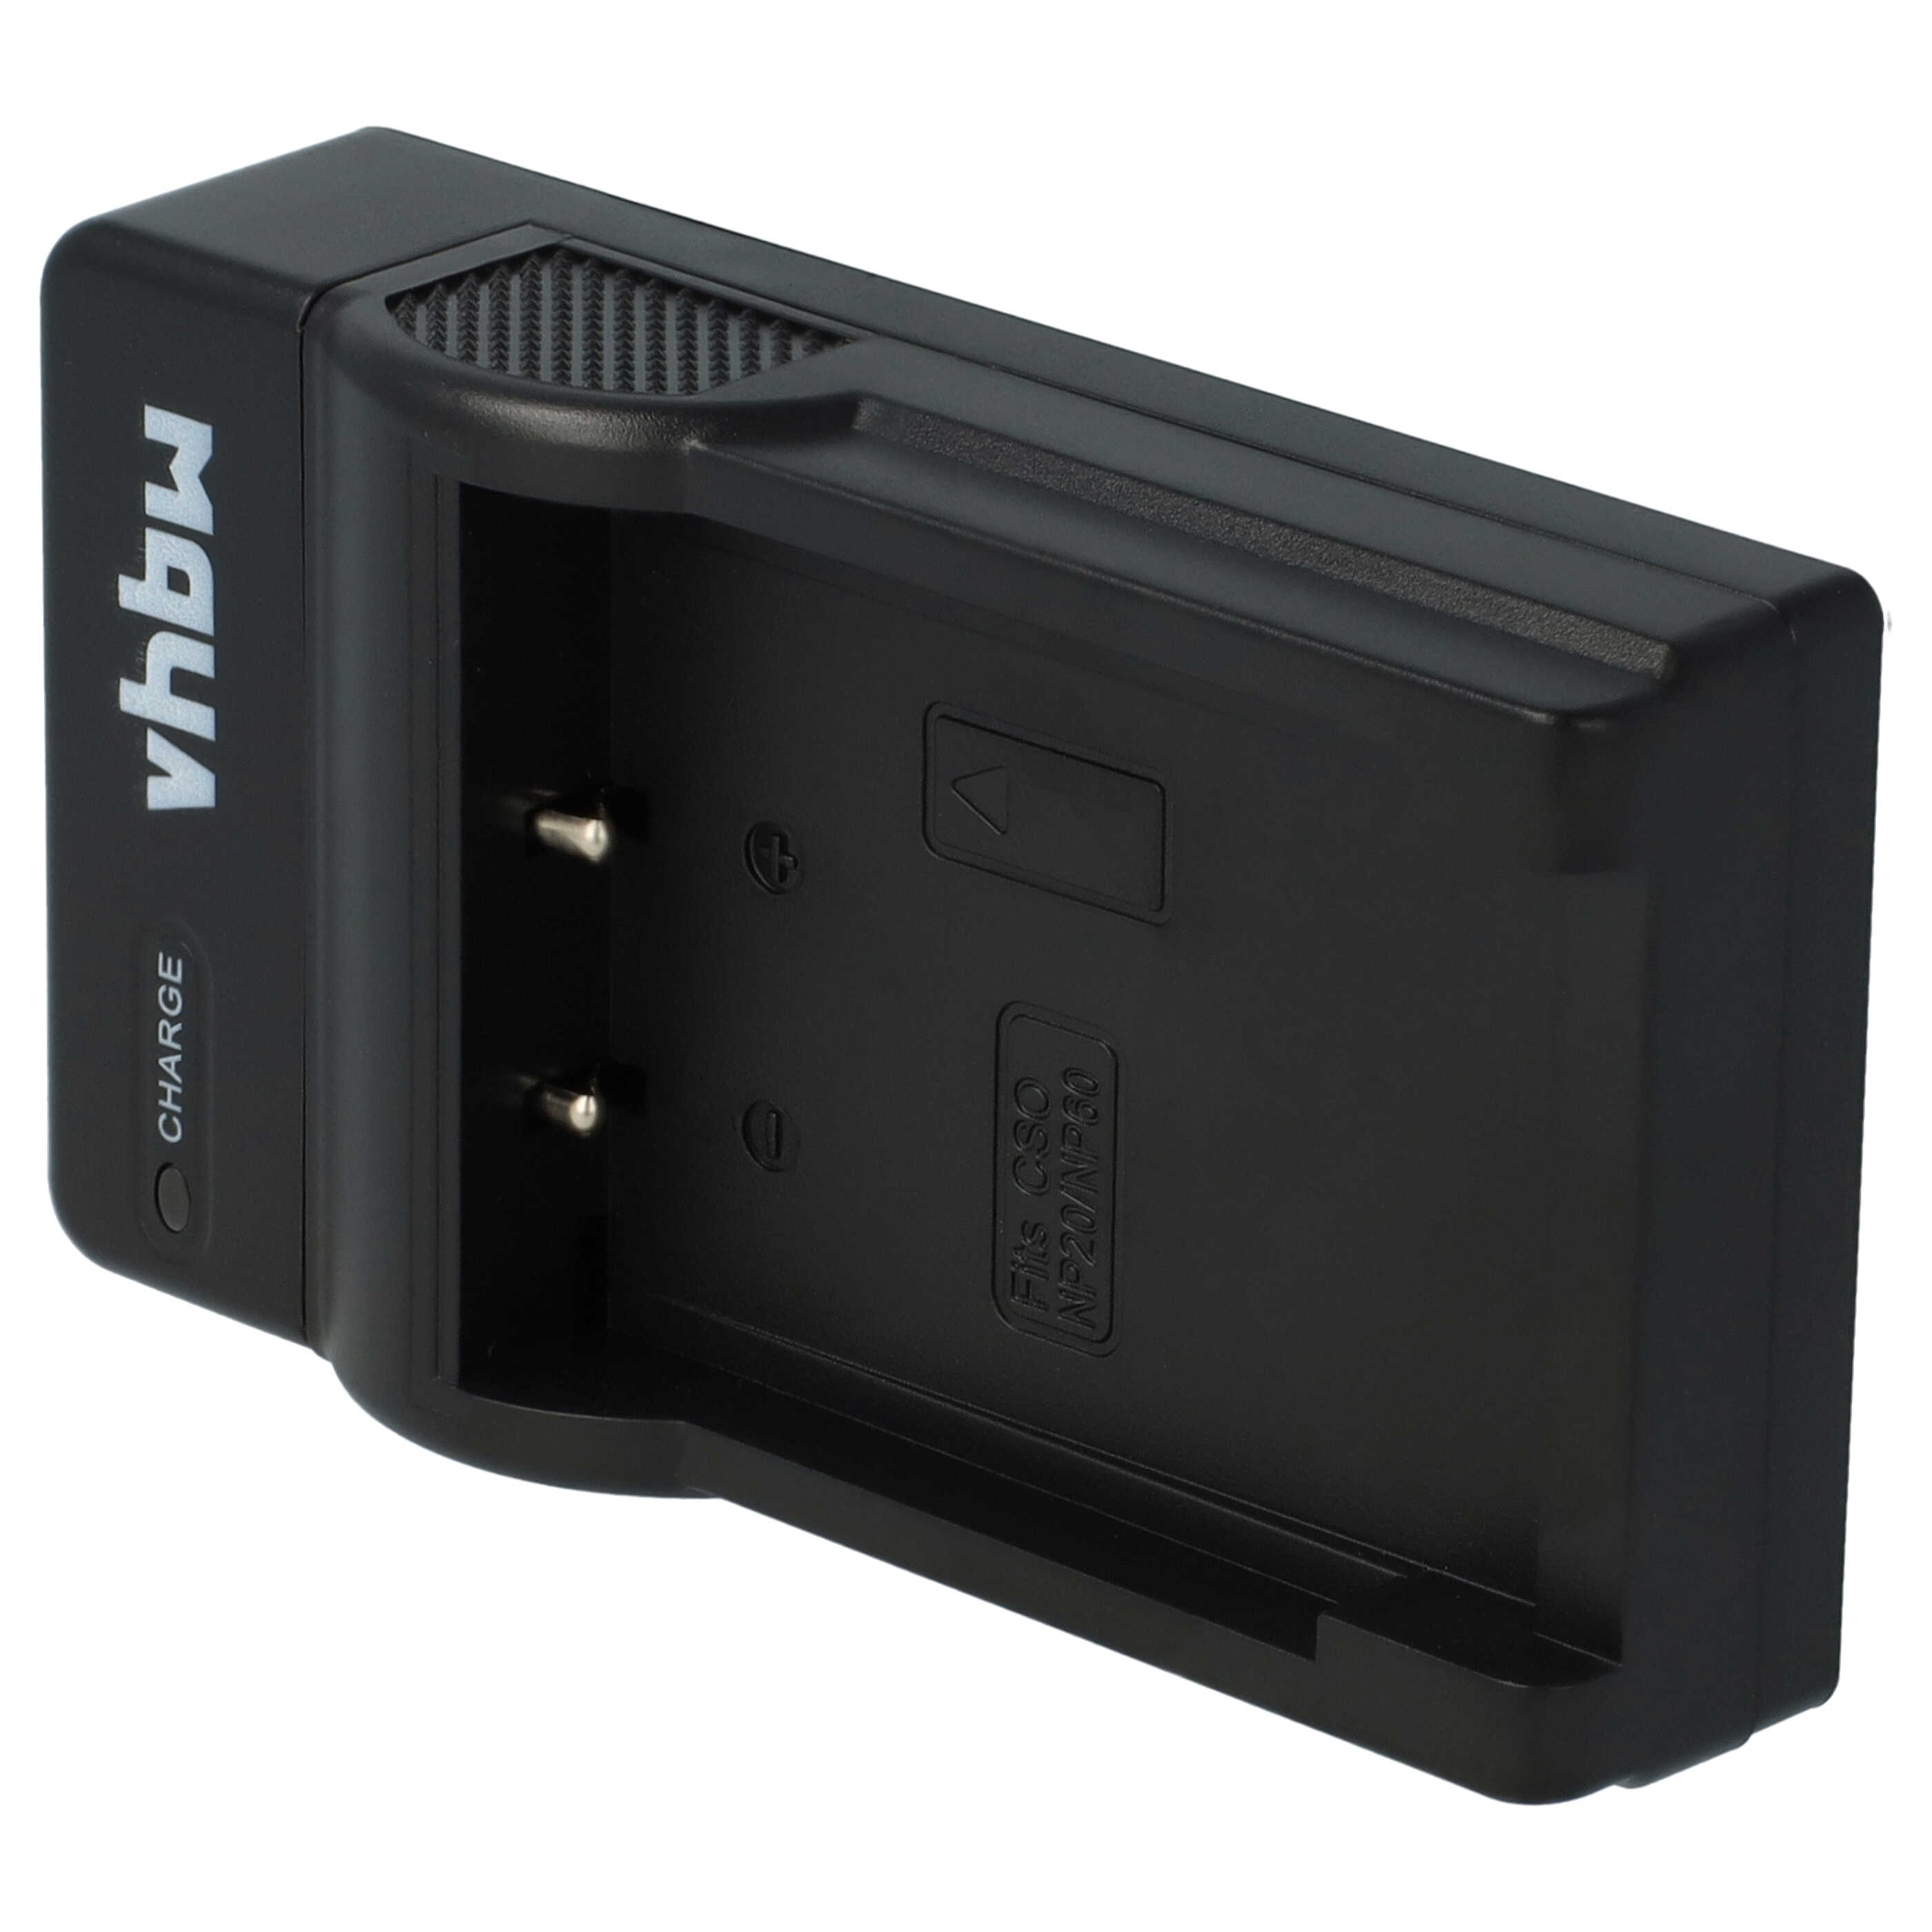 Akku Ladegerät passend für Easypix Digitalkamera und weitere - 0,5 A, 4,2 V